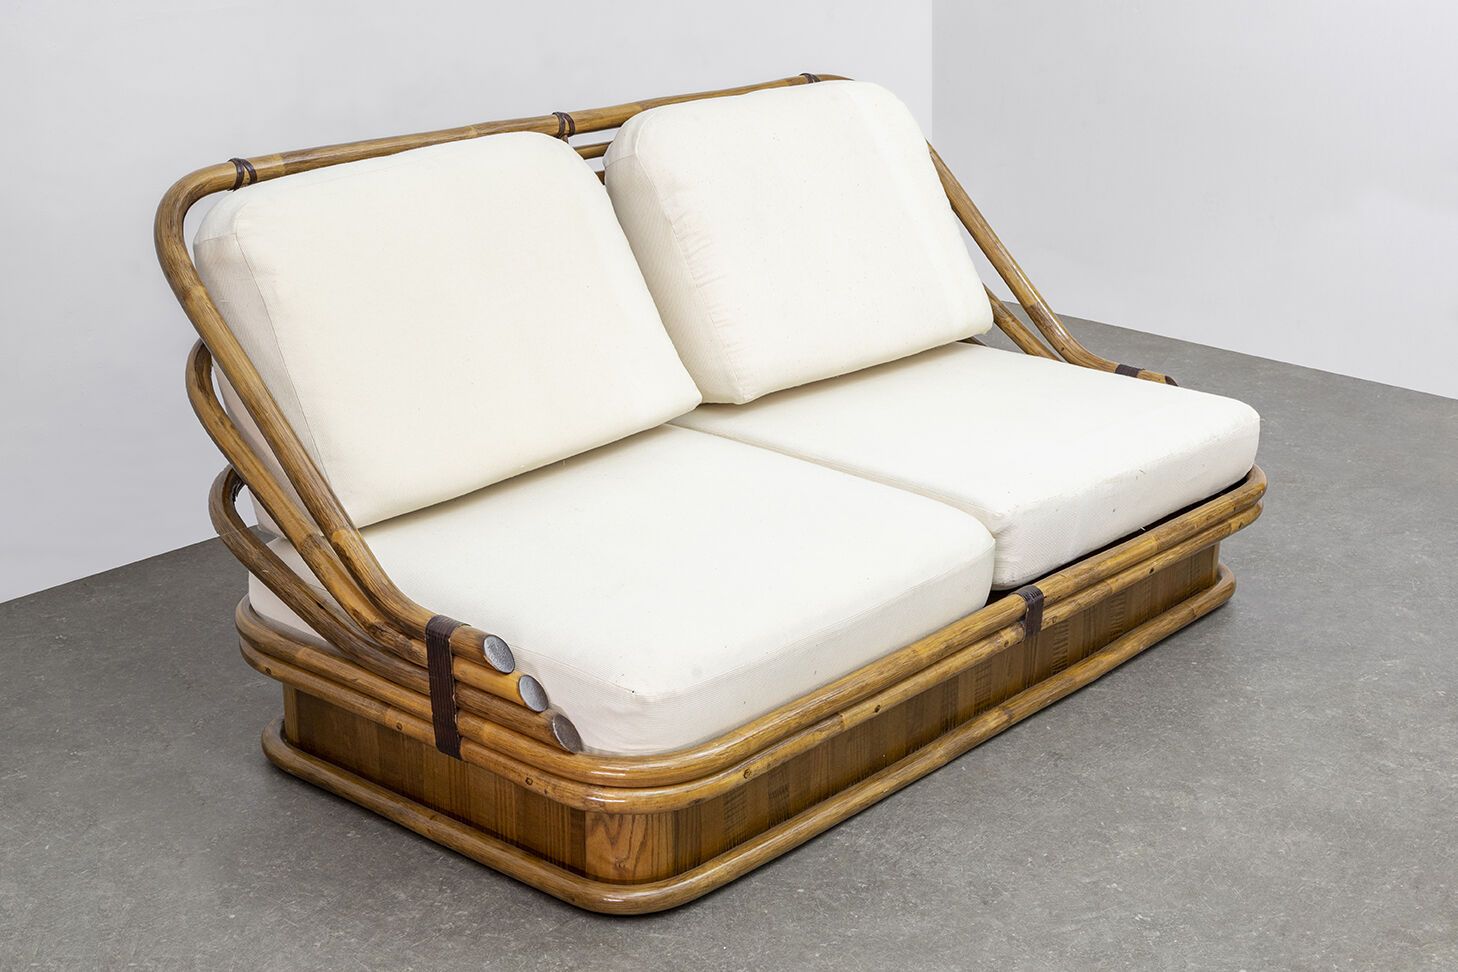 FABIO LENCI (Né en 1935) 法比奥-伦奇（生于1935年）

藤制双座沙发，座椅为白色织物。

一个藤制的双座沙发，座椅为白色织物。

长&hellip;